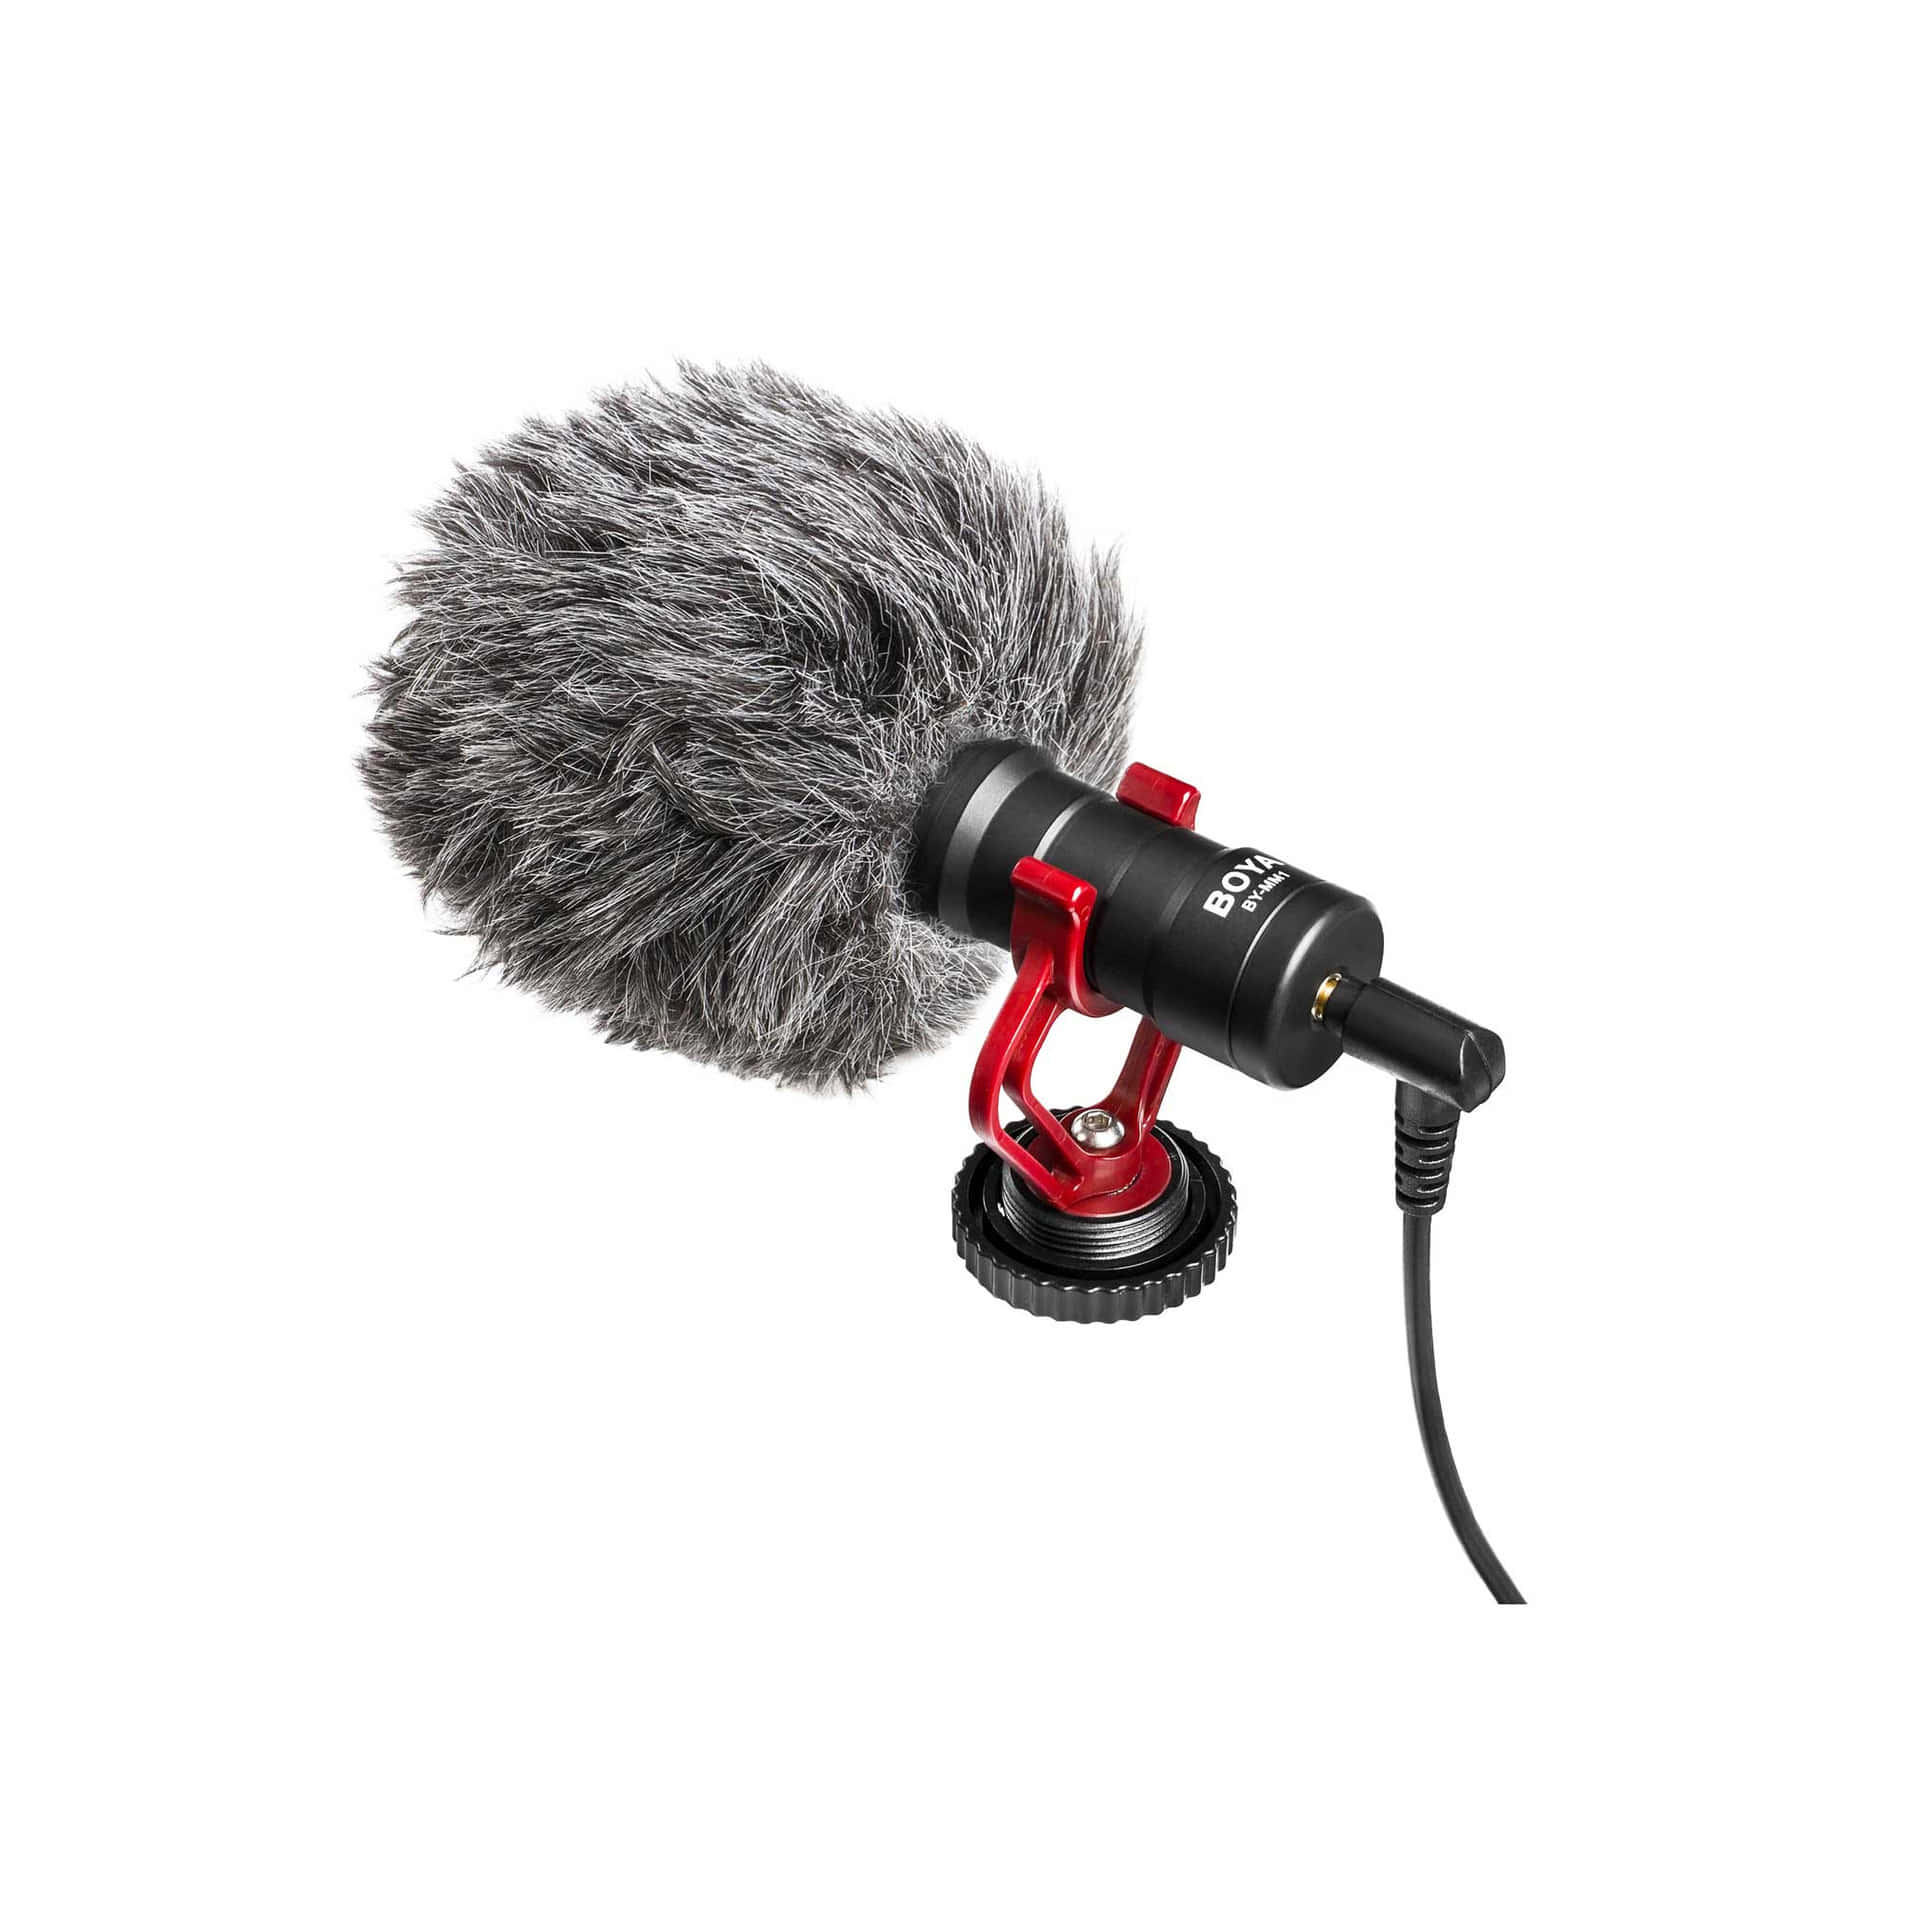 Unmicrofono Con Un Microfono Collegato Ad Esso